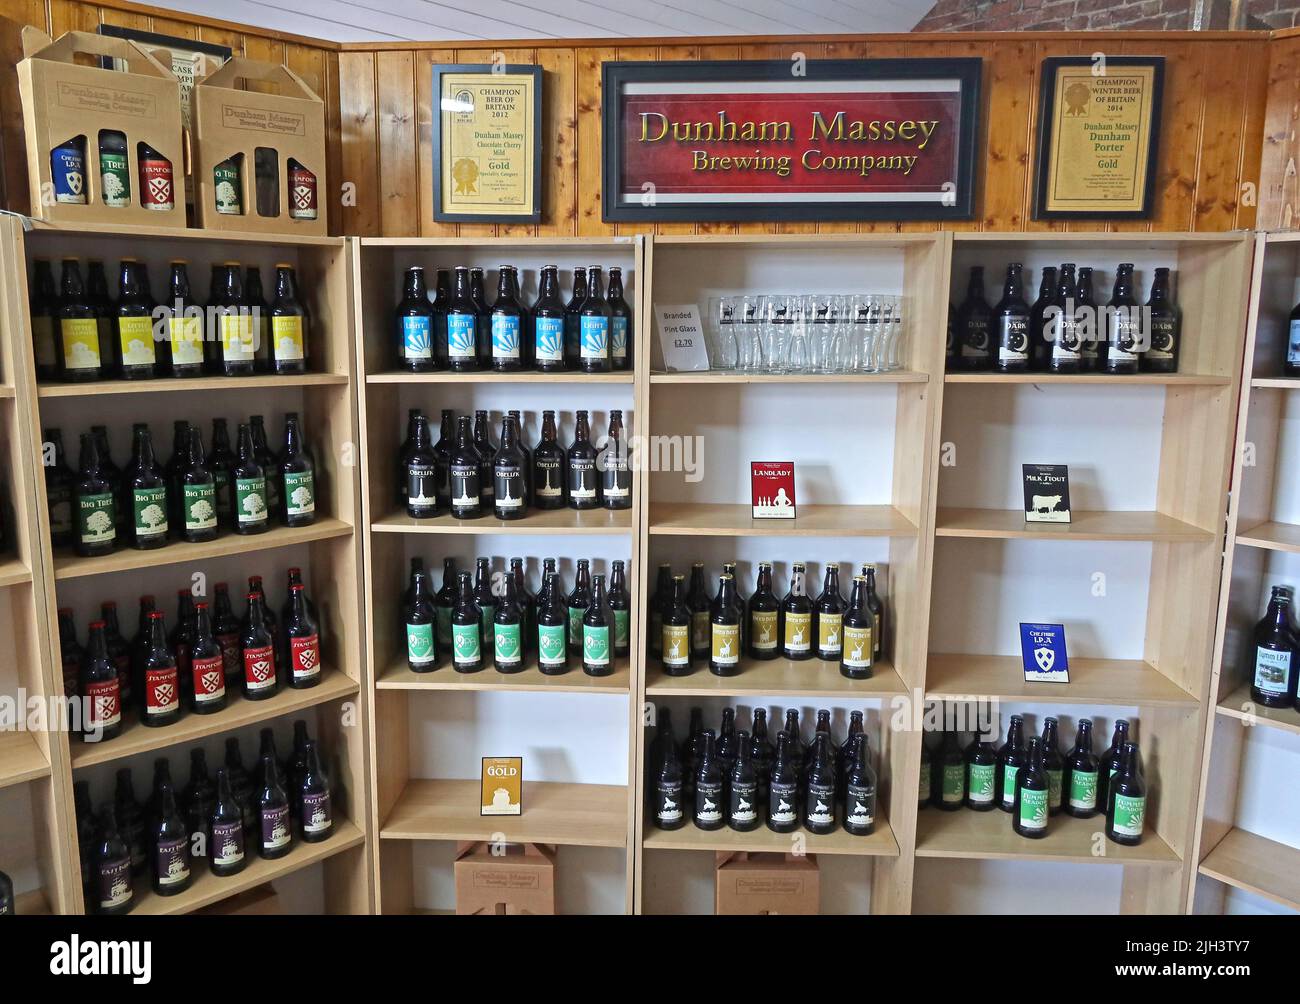 Il negozio Dunham Massey Brewing Company, gli scaffali di birra in bottiglia, Dunham Village, Bowden, Altrincham, Cheshire, INGHILTERRA, REGNO UNITO, WA14 4PE Foto Stock